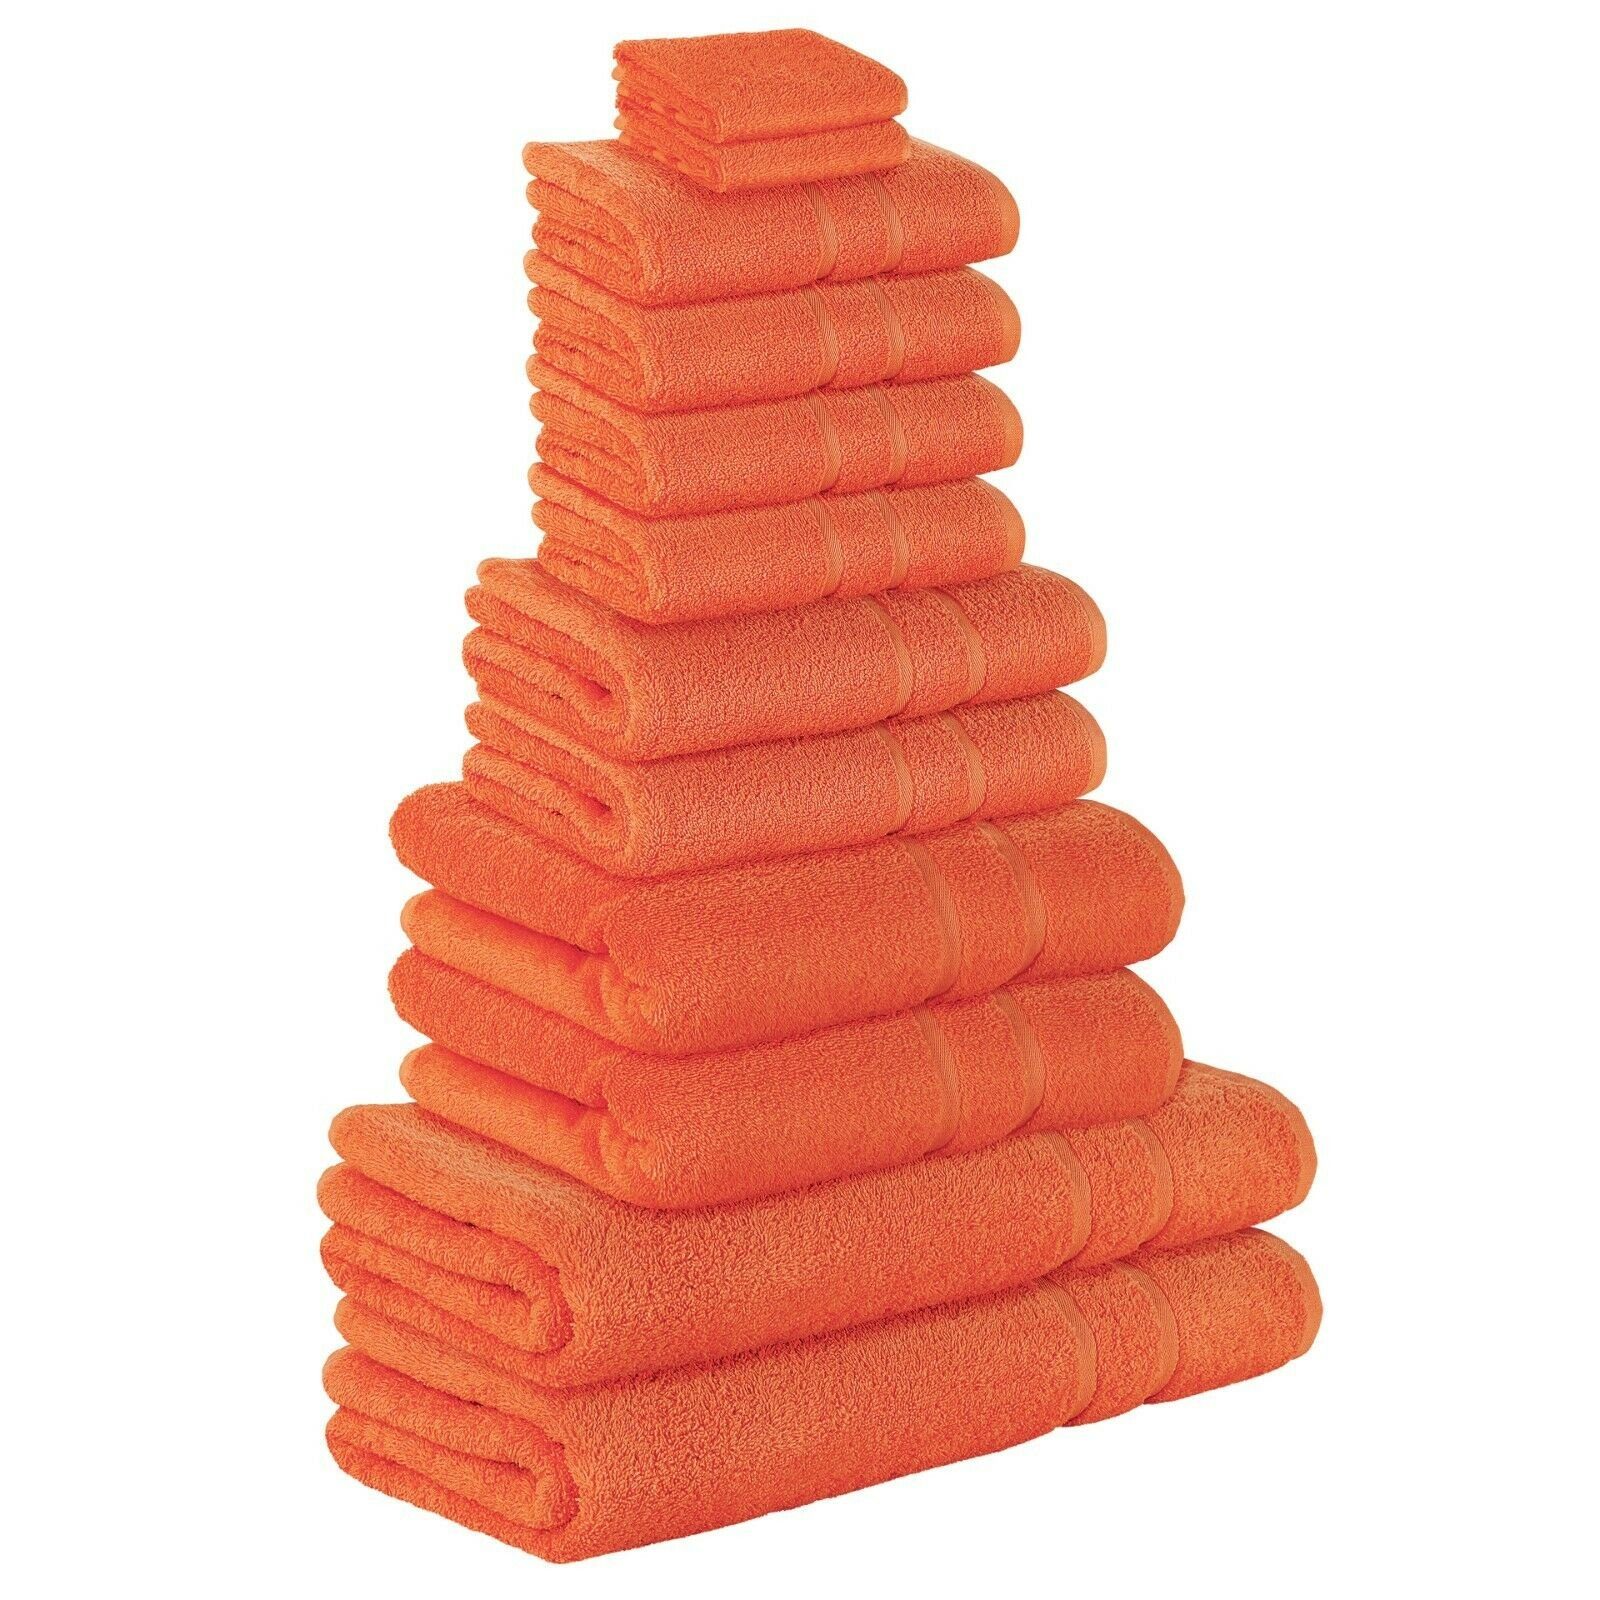 StickandShine Handtuch Set 4x Gästehandtuch 2x Handtücher 4x Duschtücher 2x Badetuch als SET in verschiedenen Farben (12 Teilig) 100% Baumwolle 500 GSM Frottee 12er Handtuch Pack, (Spar-SET) Orange